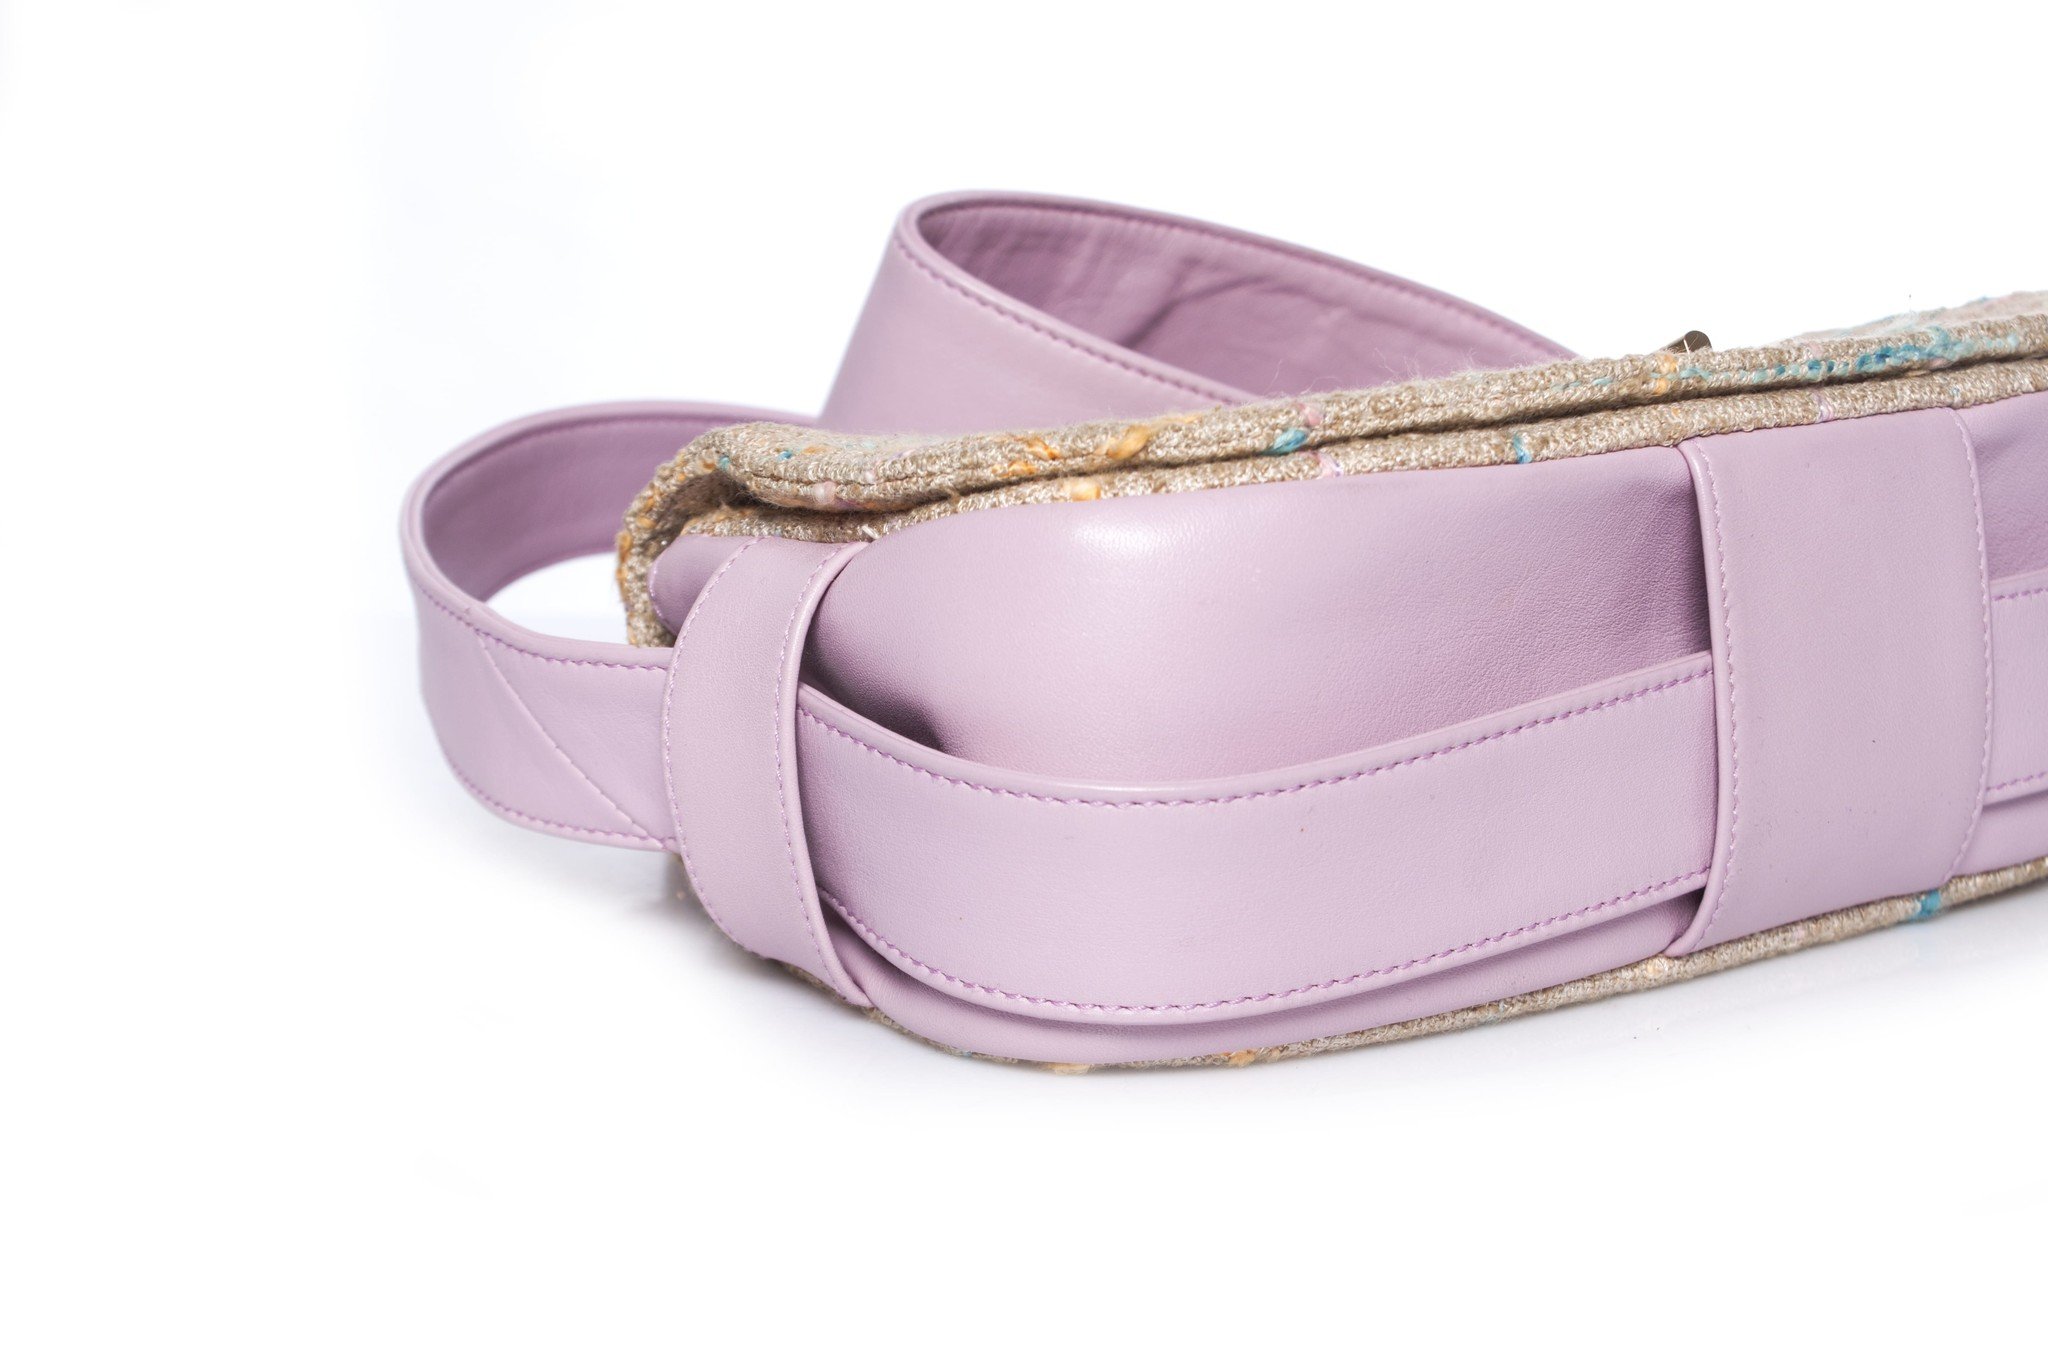 Chanel CHANEL Tweed Chain Shoulder Bag Pink EIT0615 – NUIR VINTAGE